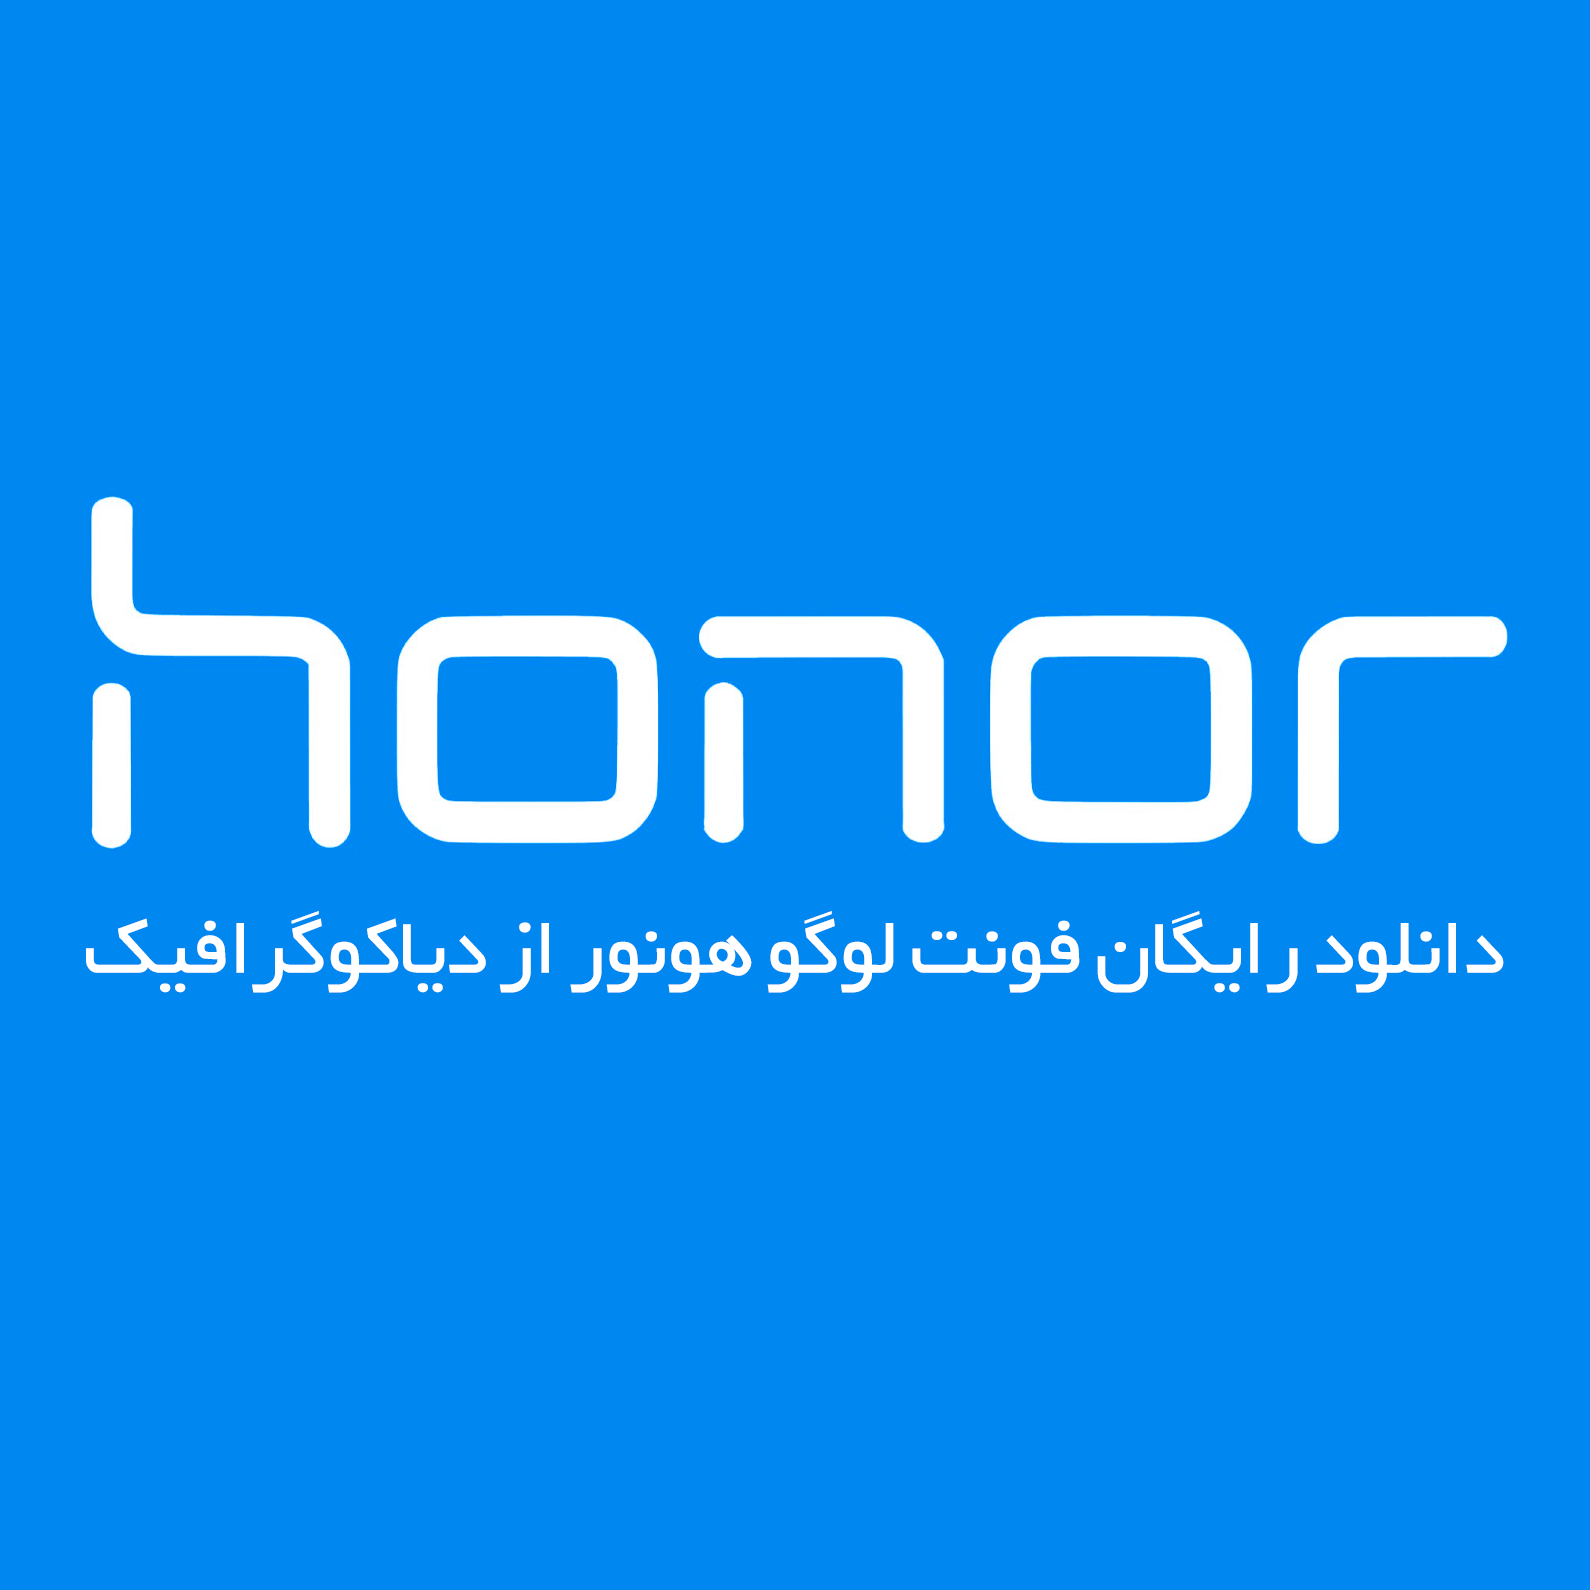 دانلود فونت انگلیسی لوگوتایپ هونور Honor Font